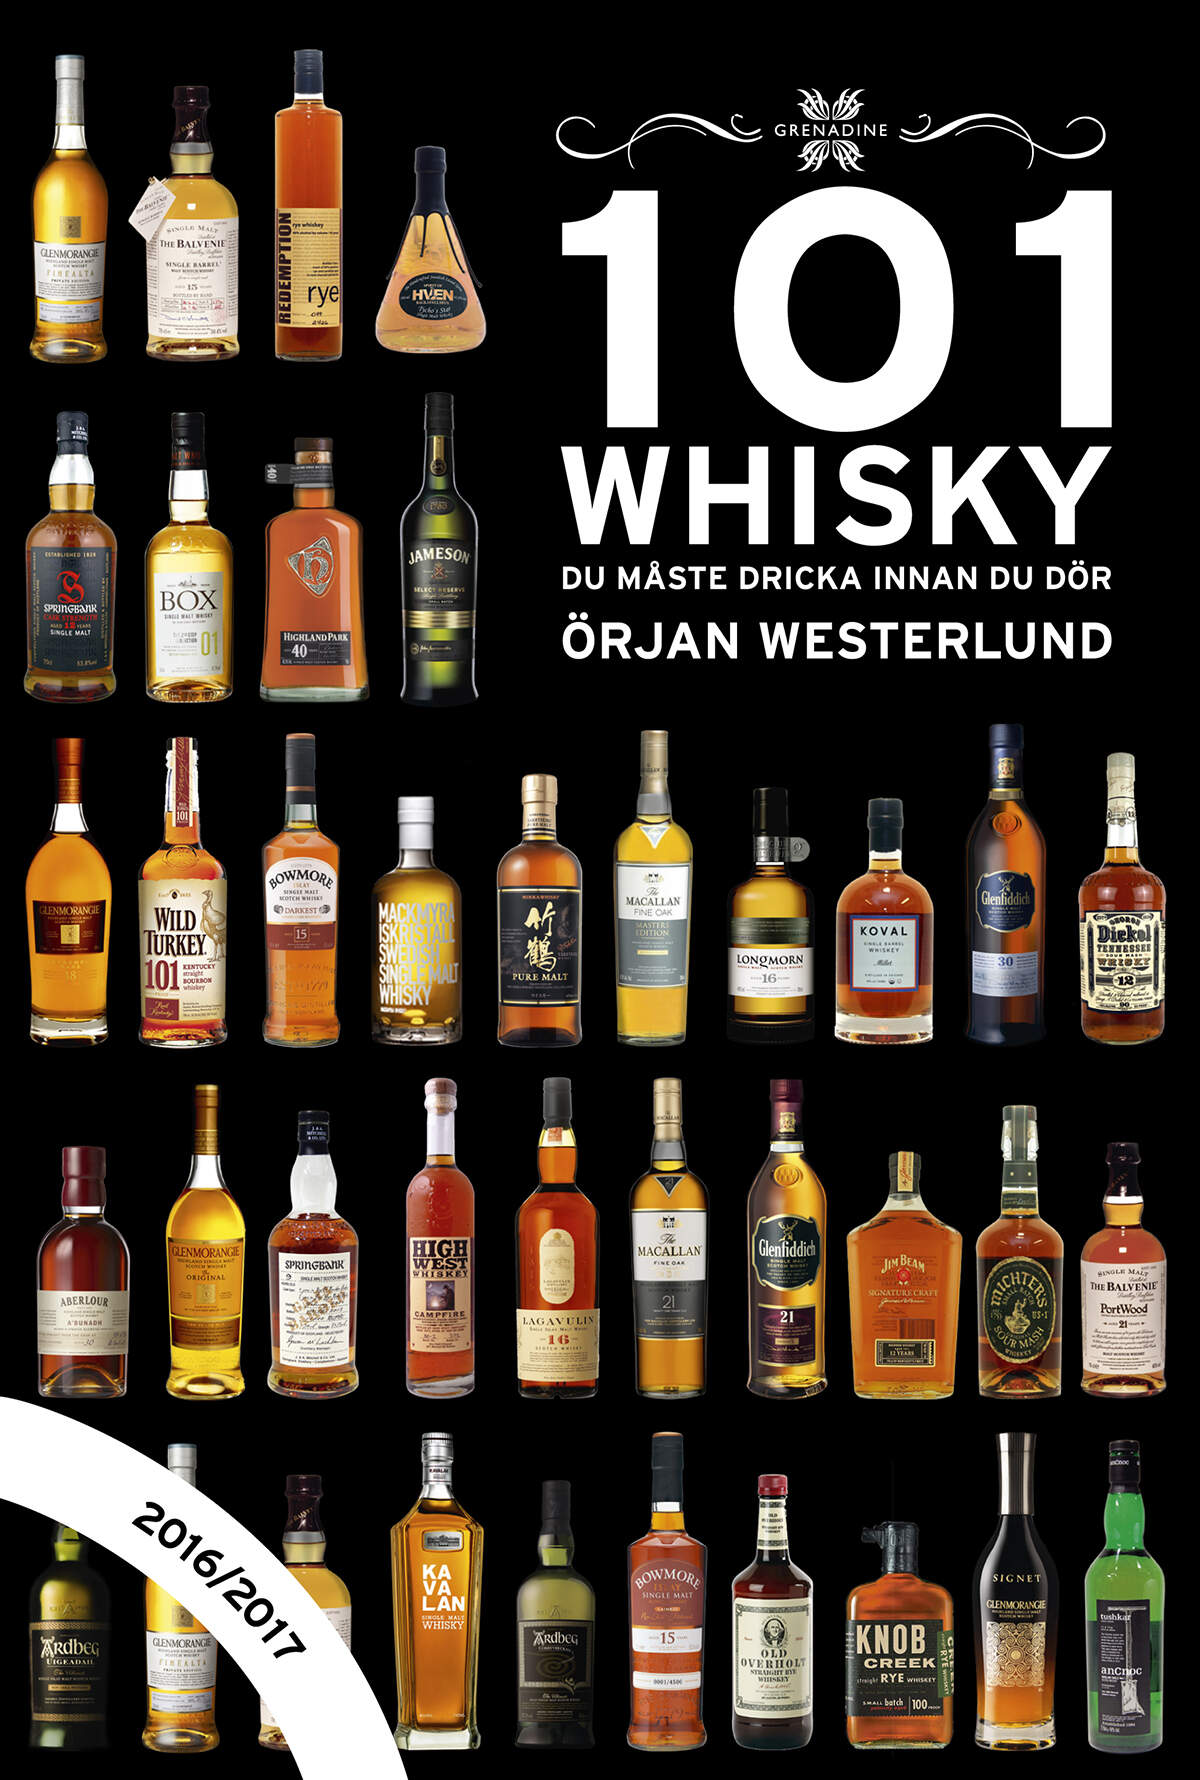 101 Whisky du måste dricka innan du dör, 2016/2017 av Örjan Westerlund, Grenadine Bokförlag.